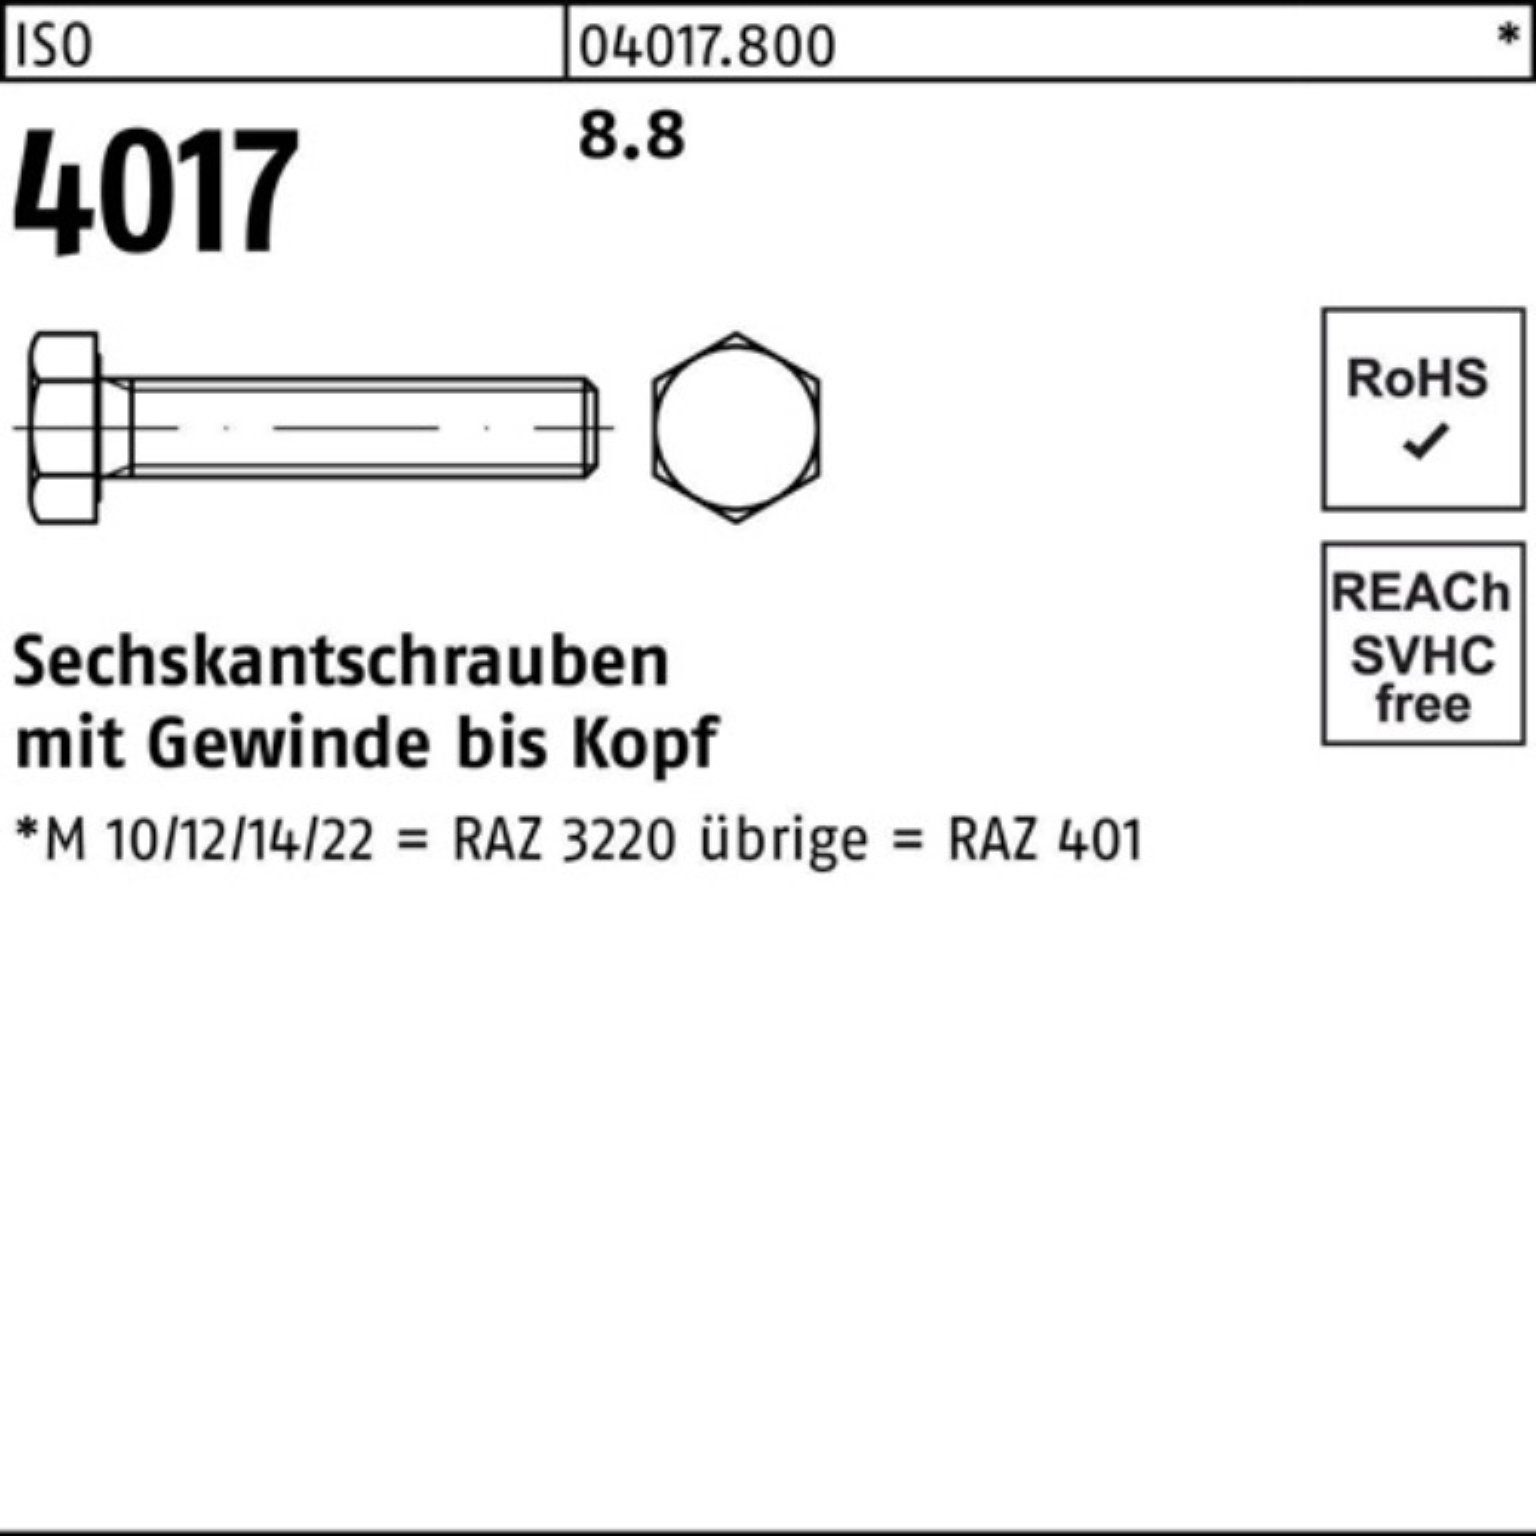 Bufab Sechskantschraube 100er Pack Sechskantschraube 8.8 4017 ISO 25 401 Stück 100 VG ISO M3x